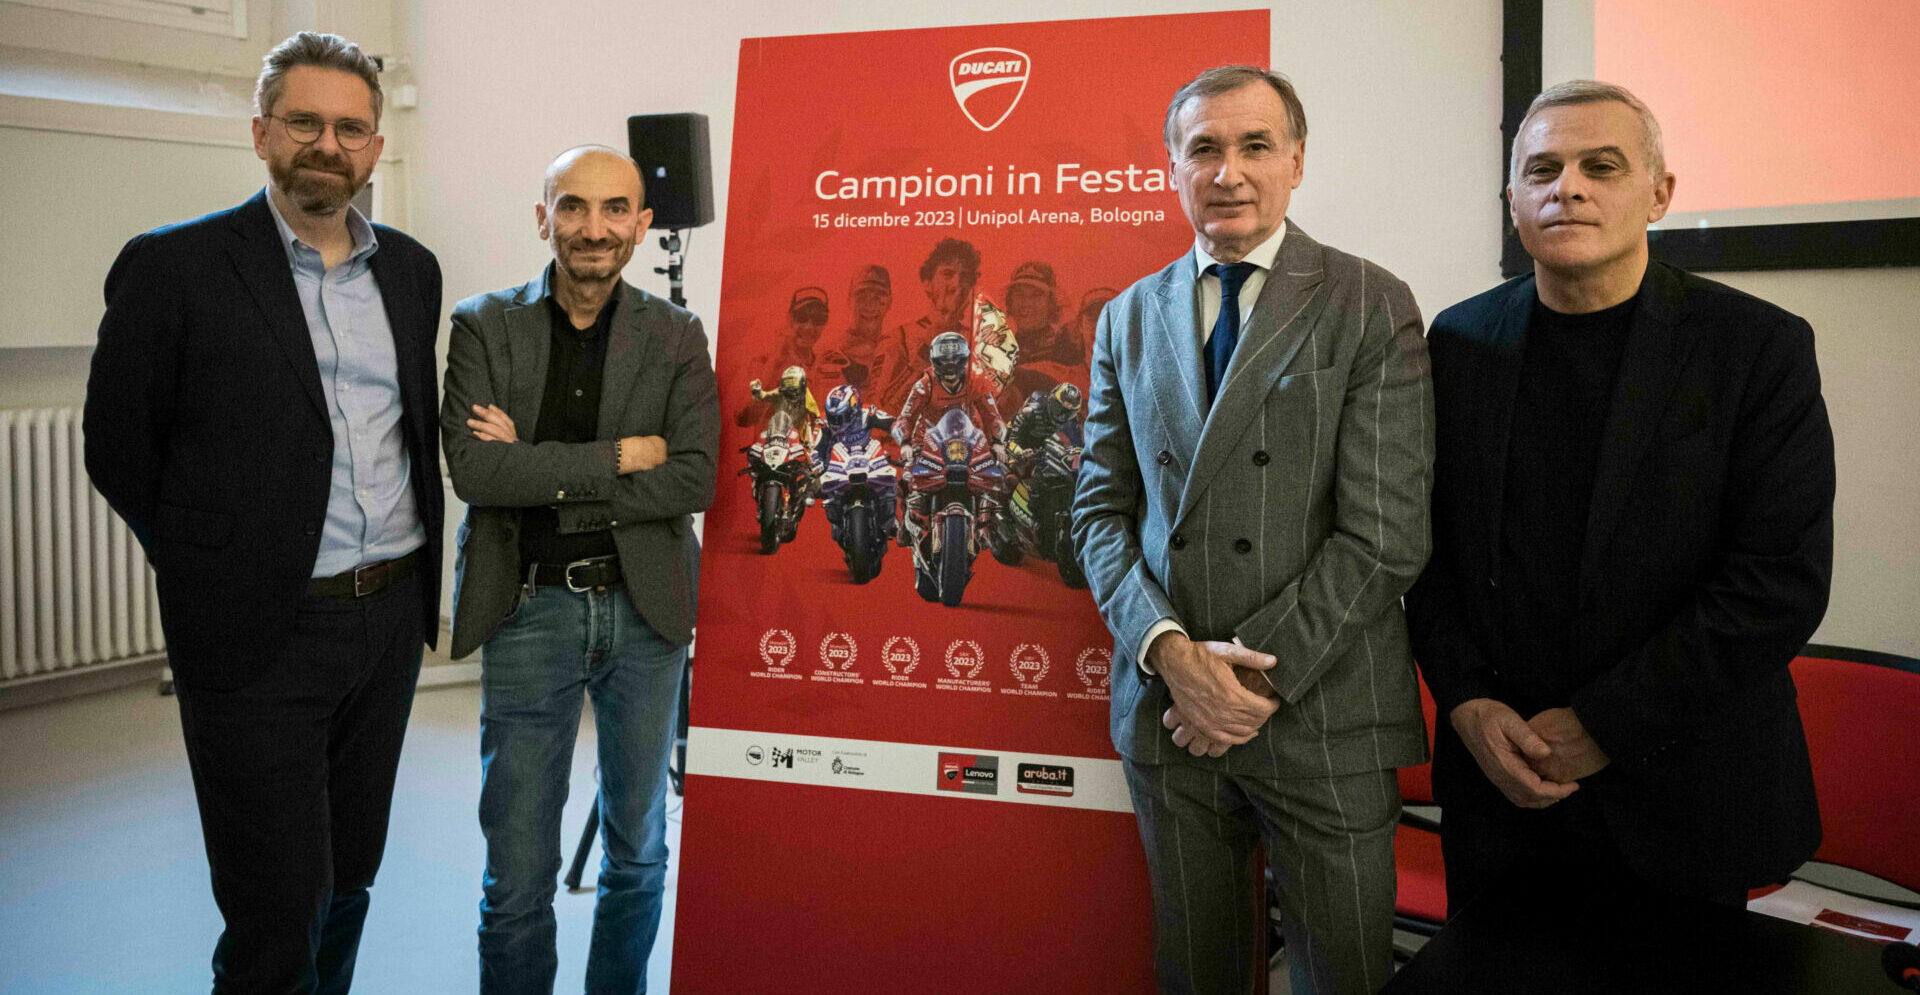 (From left) Bologna Mayor Matteo Lepore, Ducati CEO Claudio Domenicali, Unipol Arena representative Claudio Sabatini, and Casalecchio di Reno Mayor Massino Bosso. Photo courtesy Ducati.